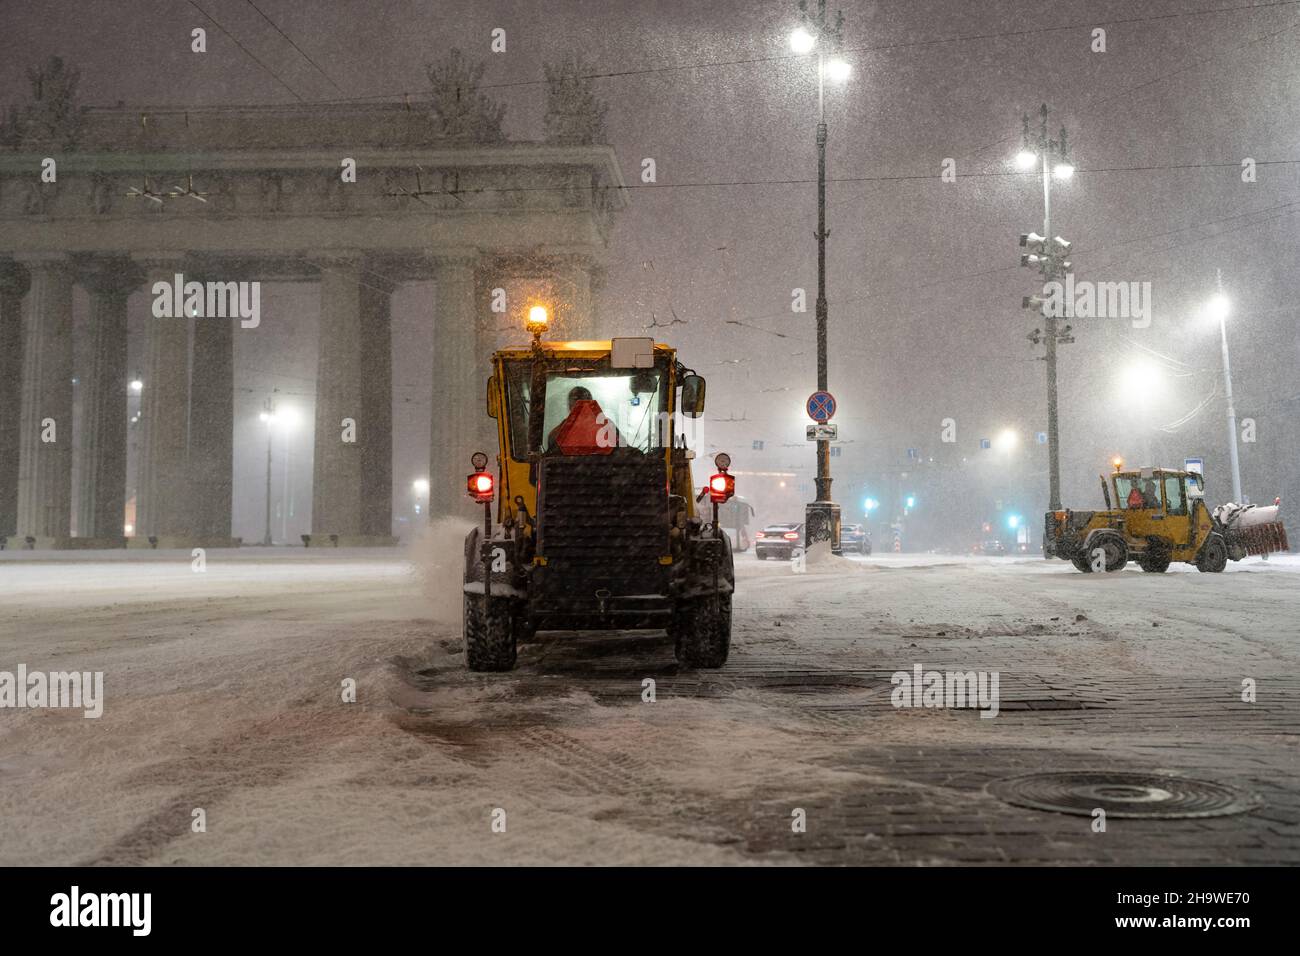 Les véhicules déneigement fonctionnent en ville après les chutes de neige.Les tracteurs, les bulldozers et les souffleurs nettoient les rues Banque D'Images